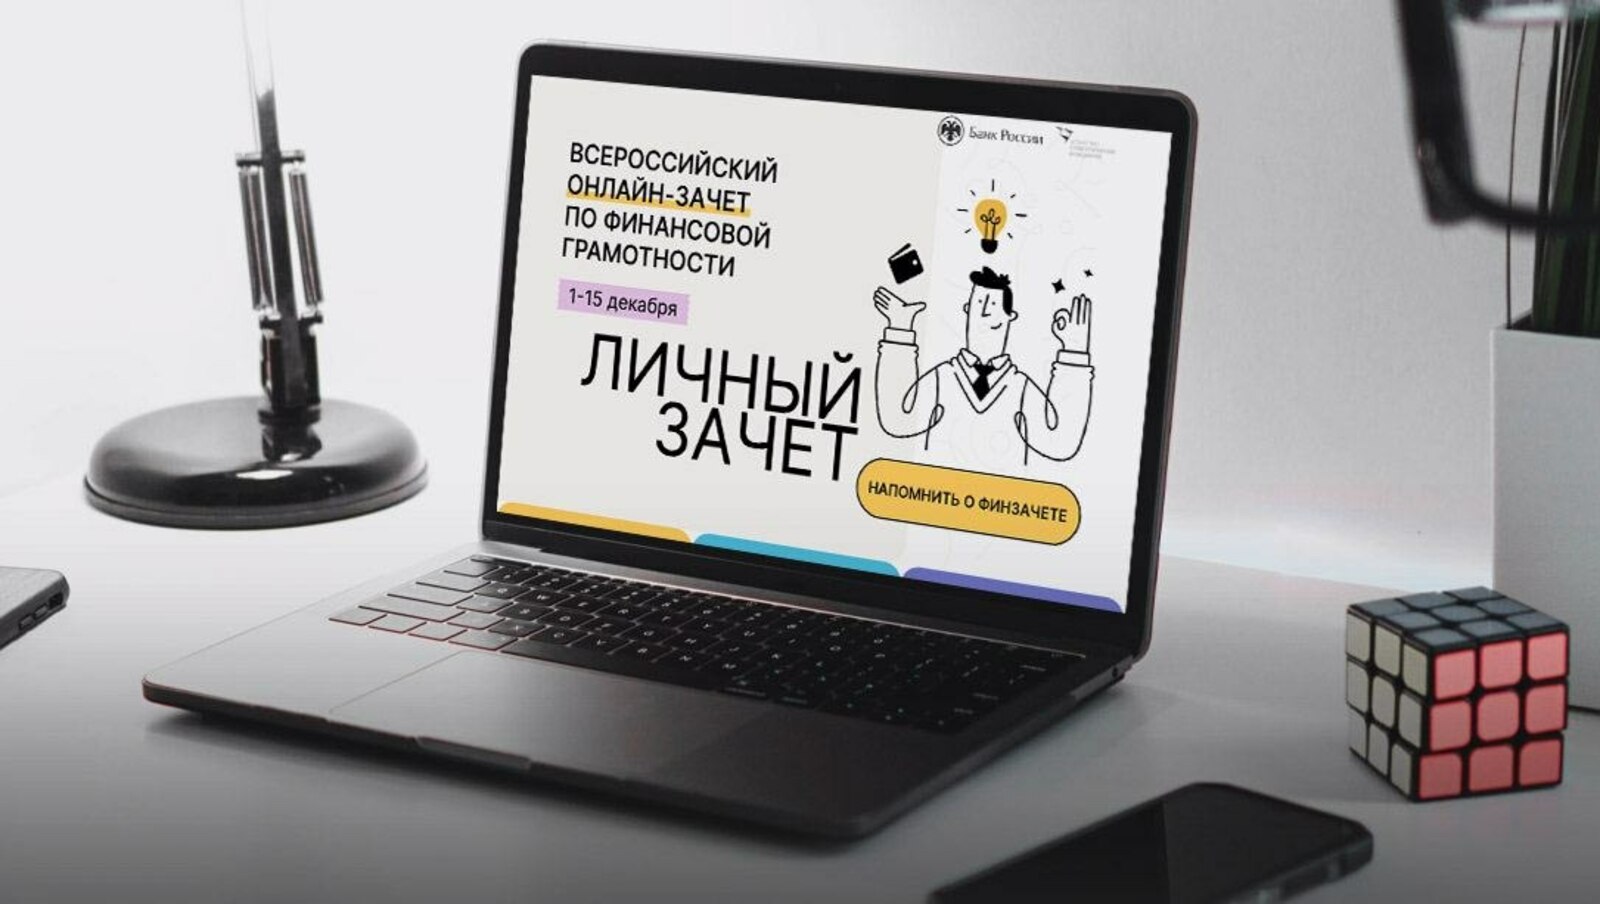 Жителей Башкортостана приглашают к участию в финансовом зачете